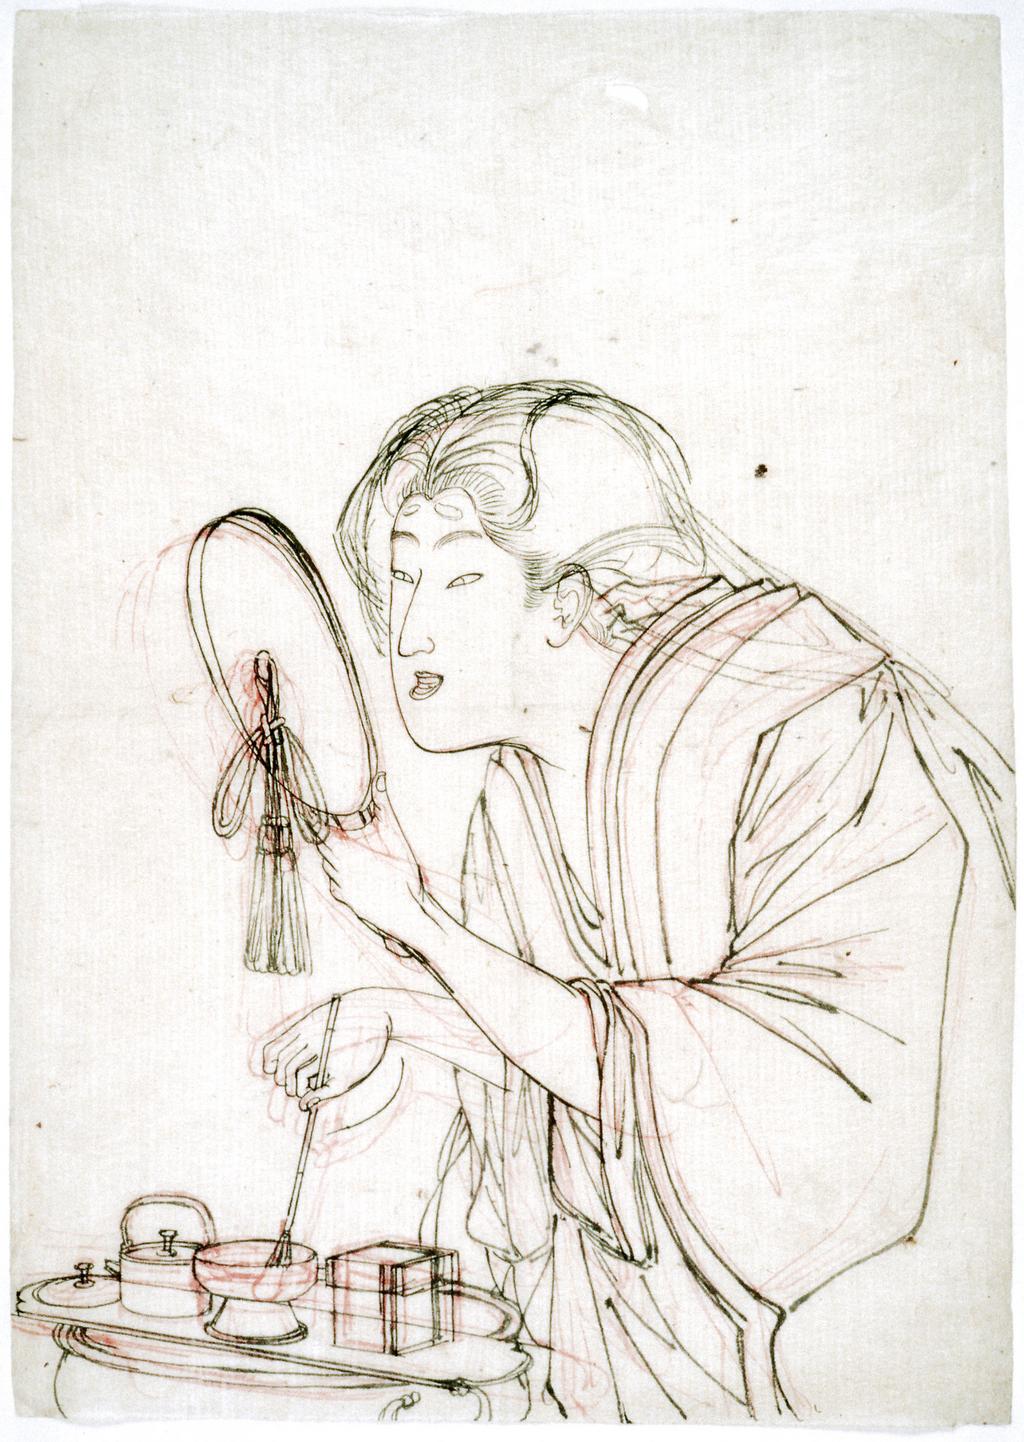 An image of A woman applying make-up. Yoshitoshi, Tsukioka (Japanese, 1839-1892). Red and black ink, 1800-1900. 